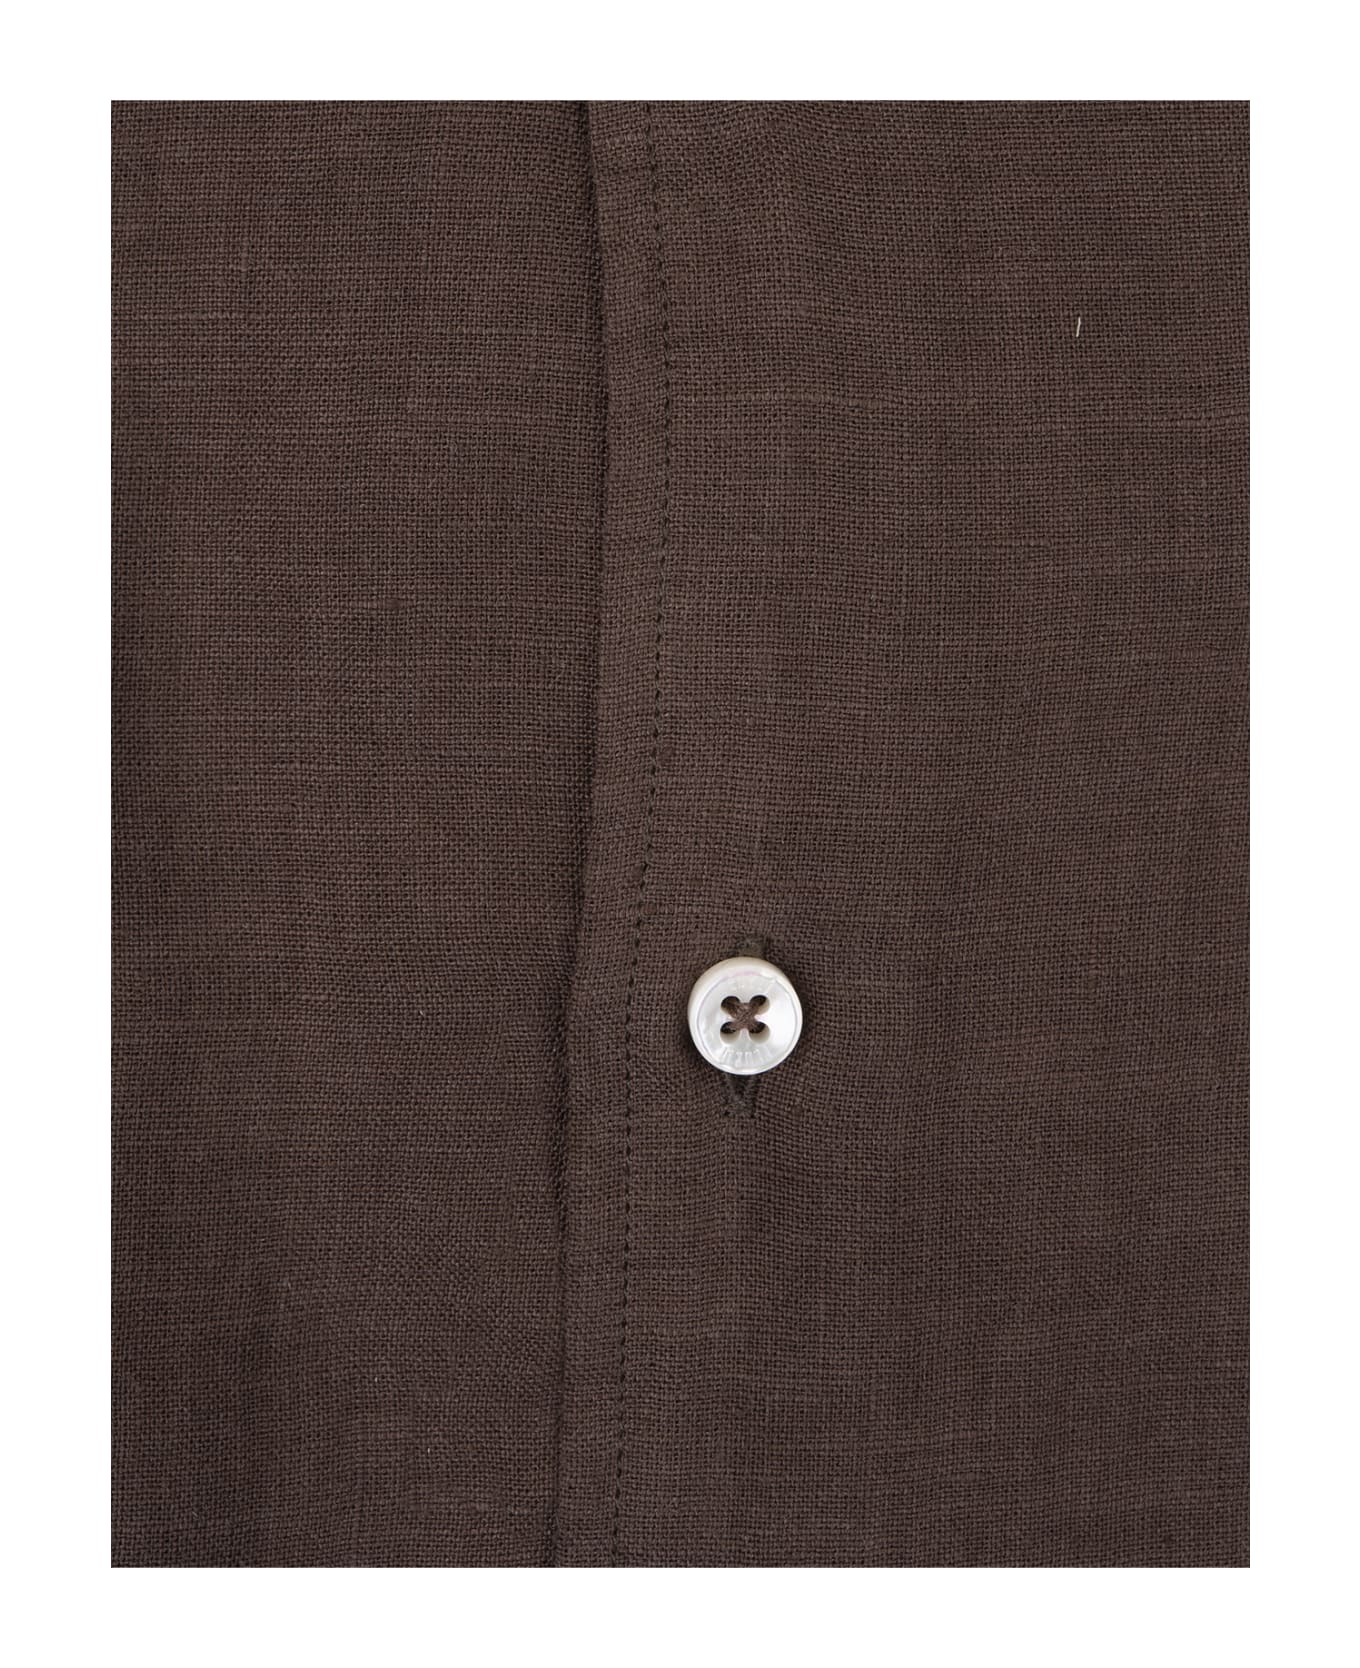 Fedeli Nick Shirt In Brown Linen - Brown シャツ